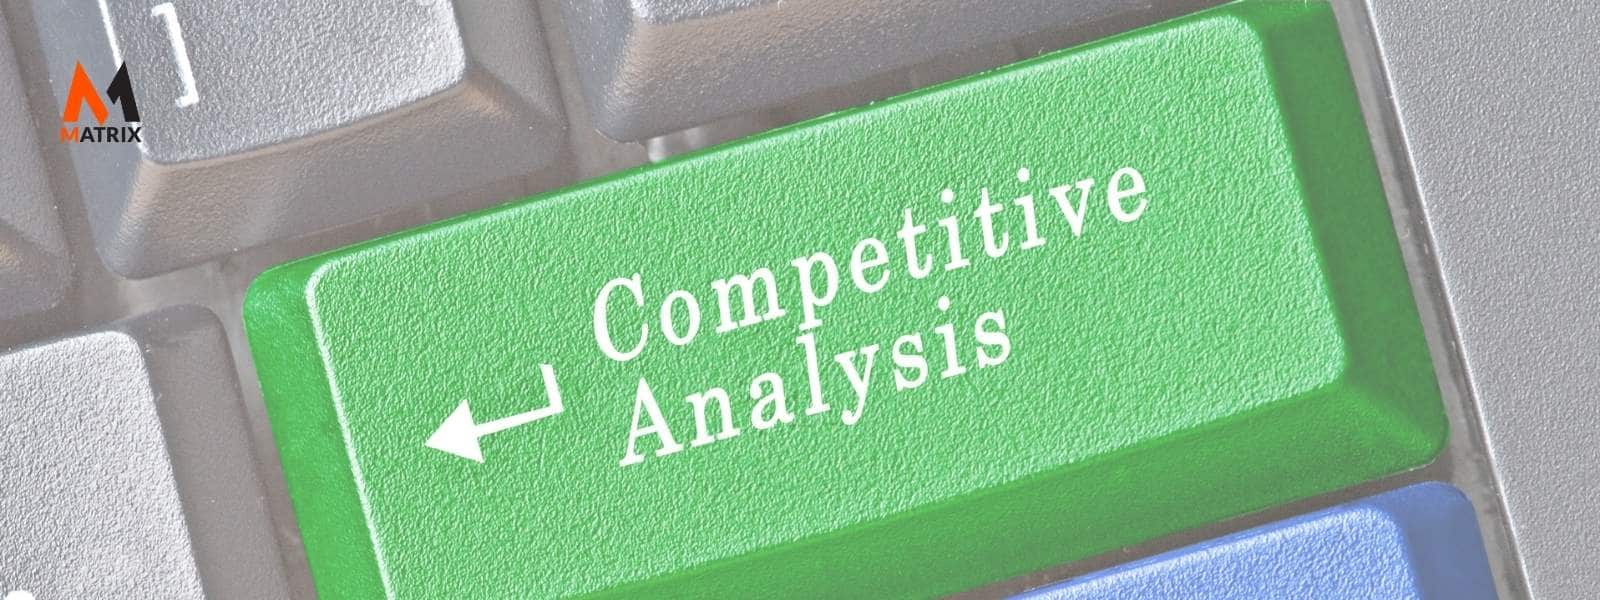 Competitor Analysis Framework?